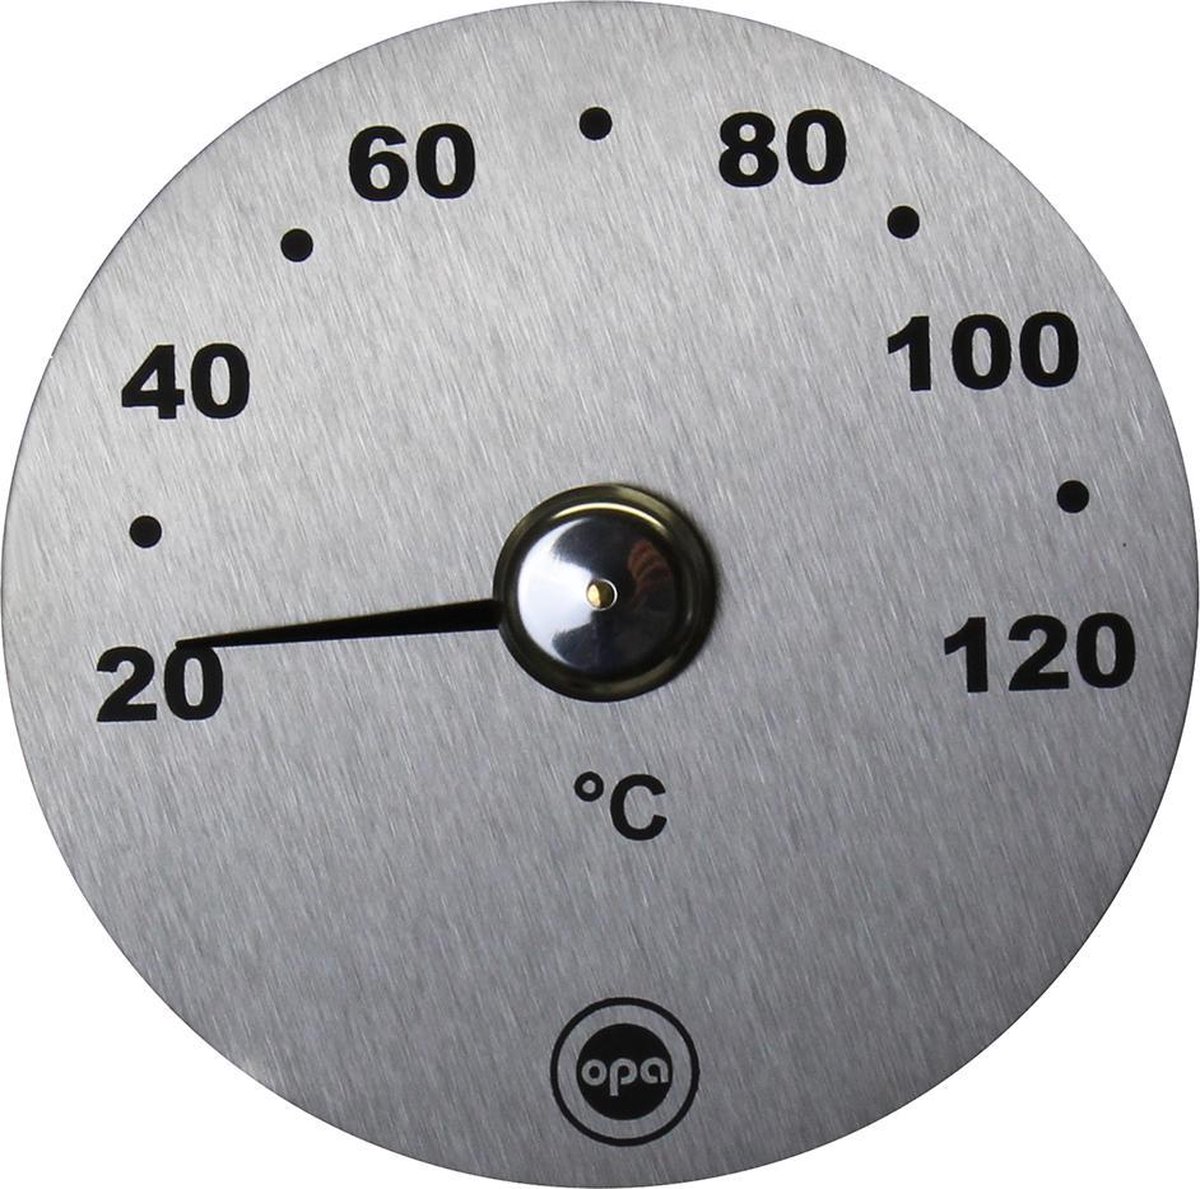 OPA - sauna thermometer - RVS - Opa Finland